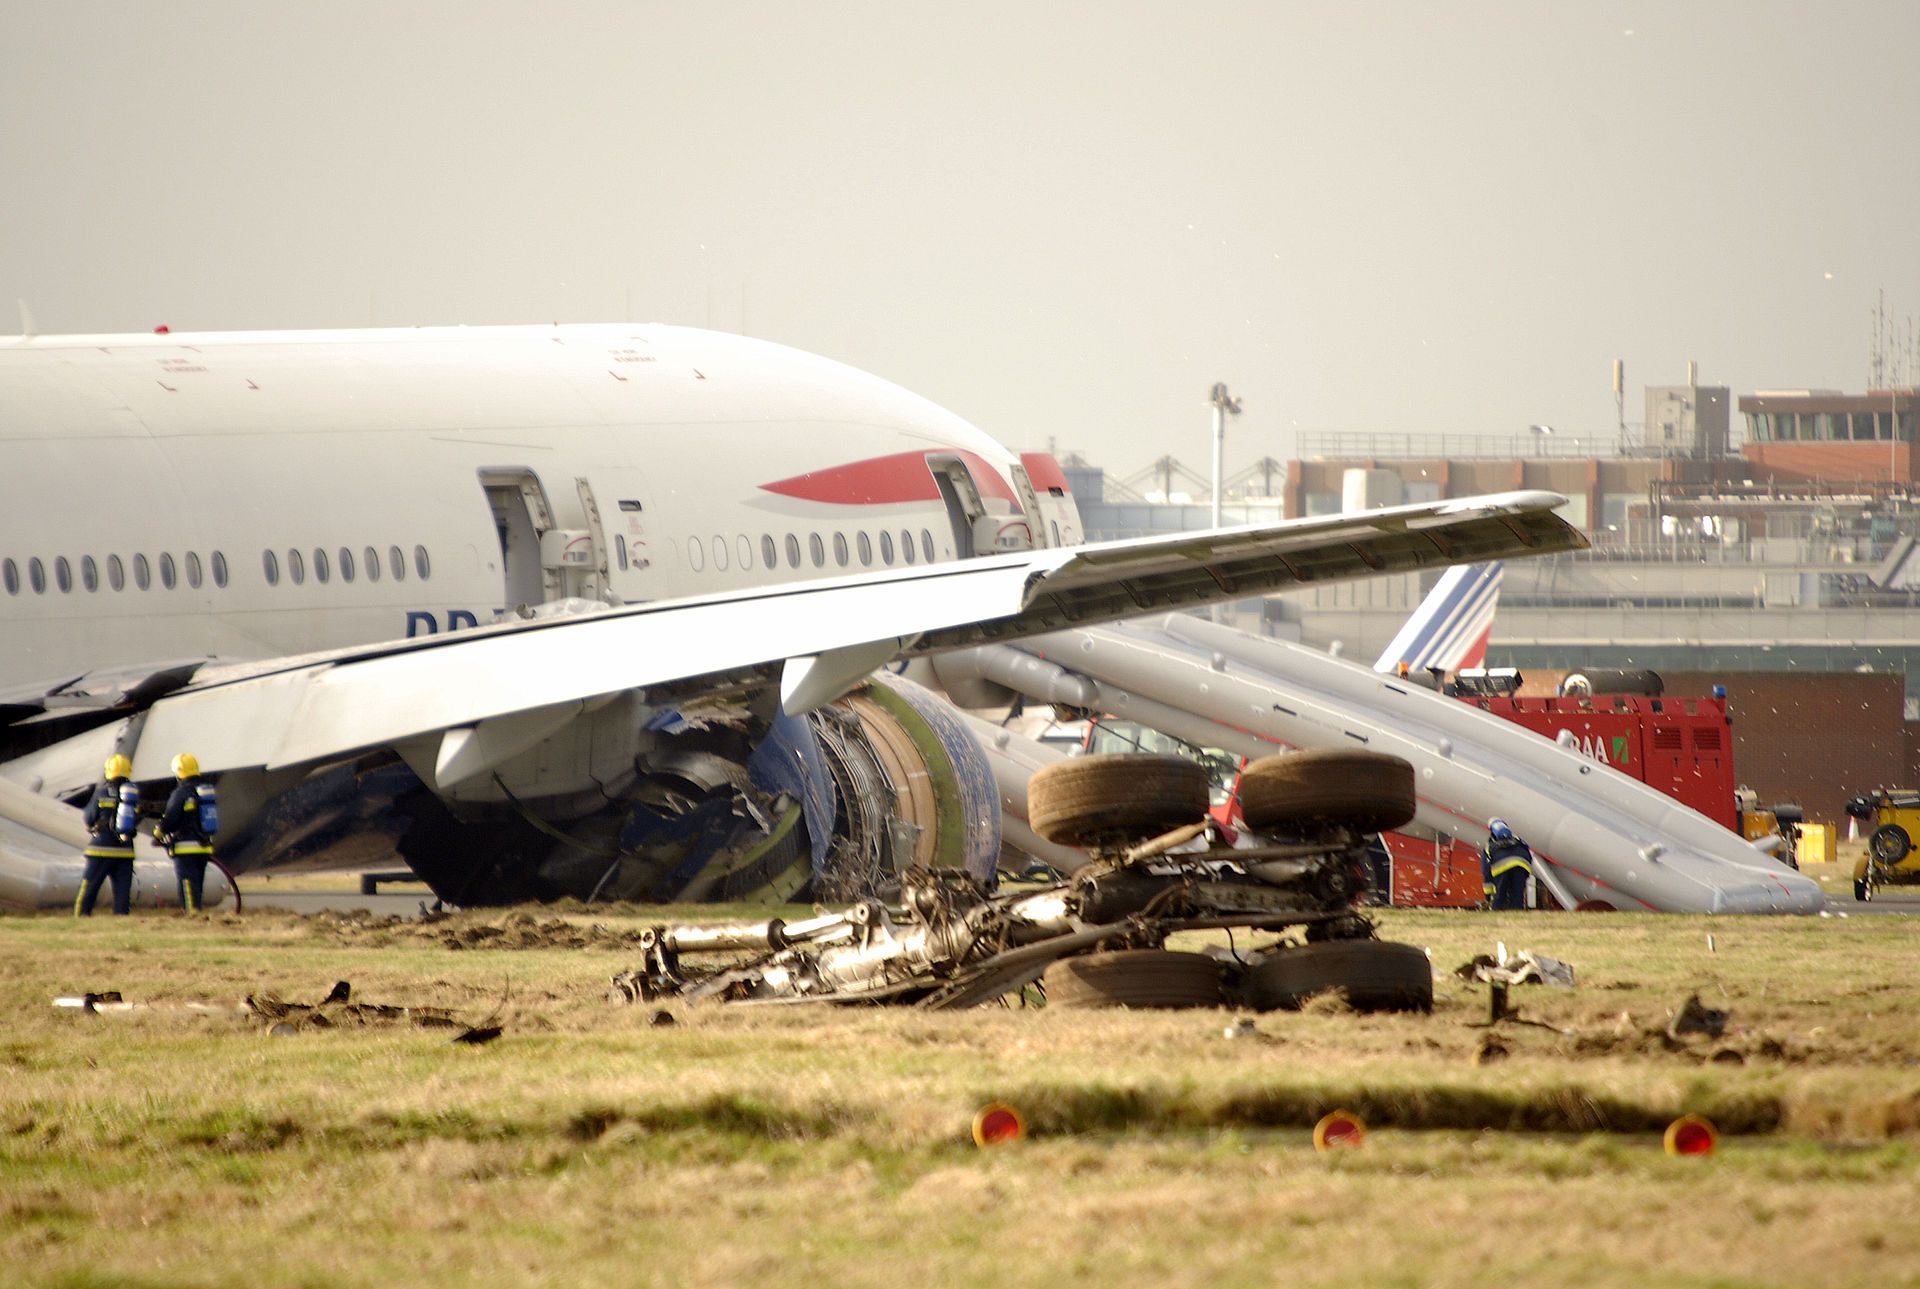 British Airways aircraft wreckage